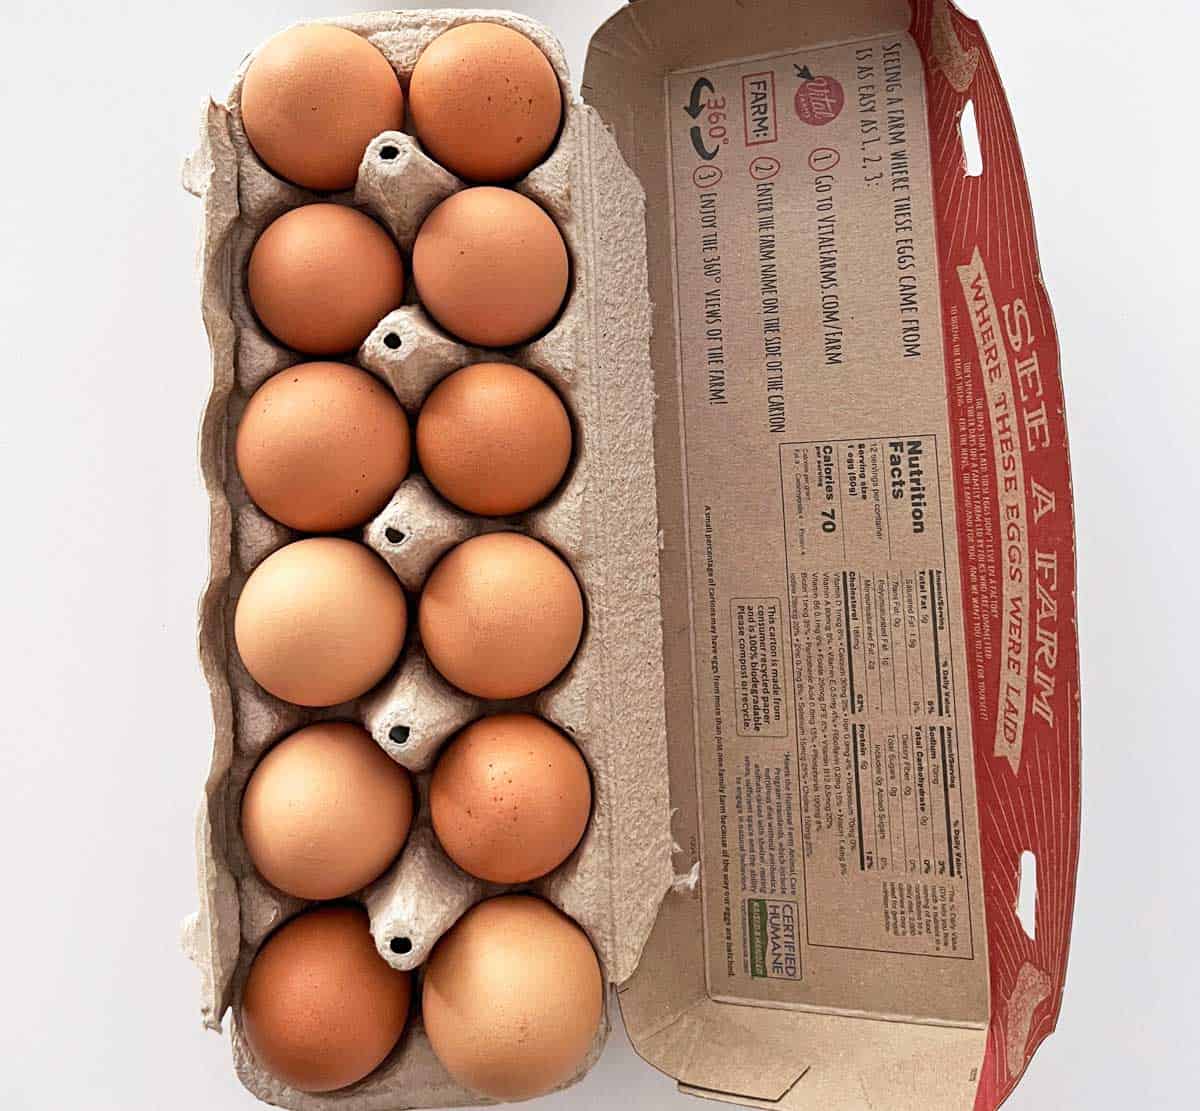 A carton of eggs on the counter. 